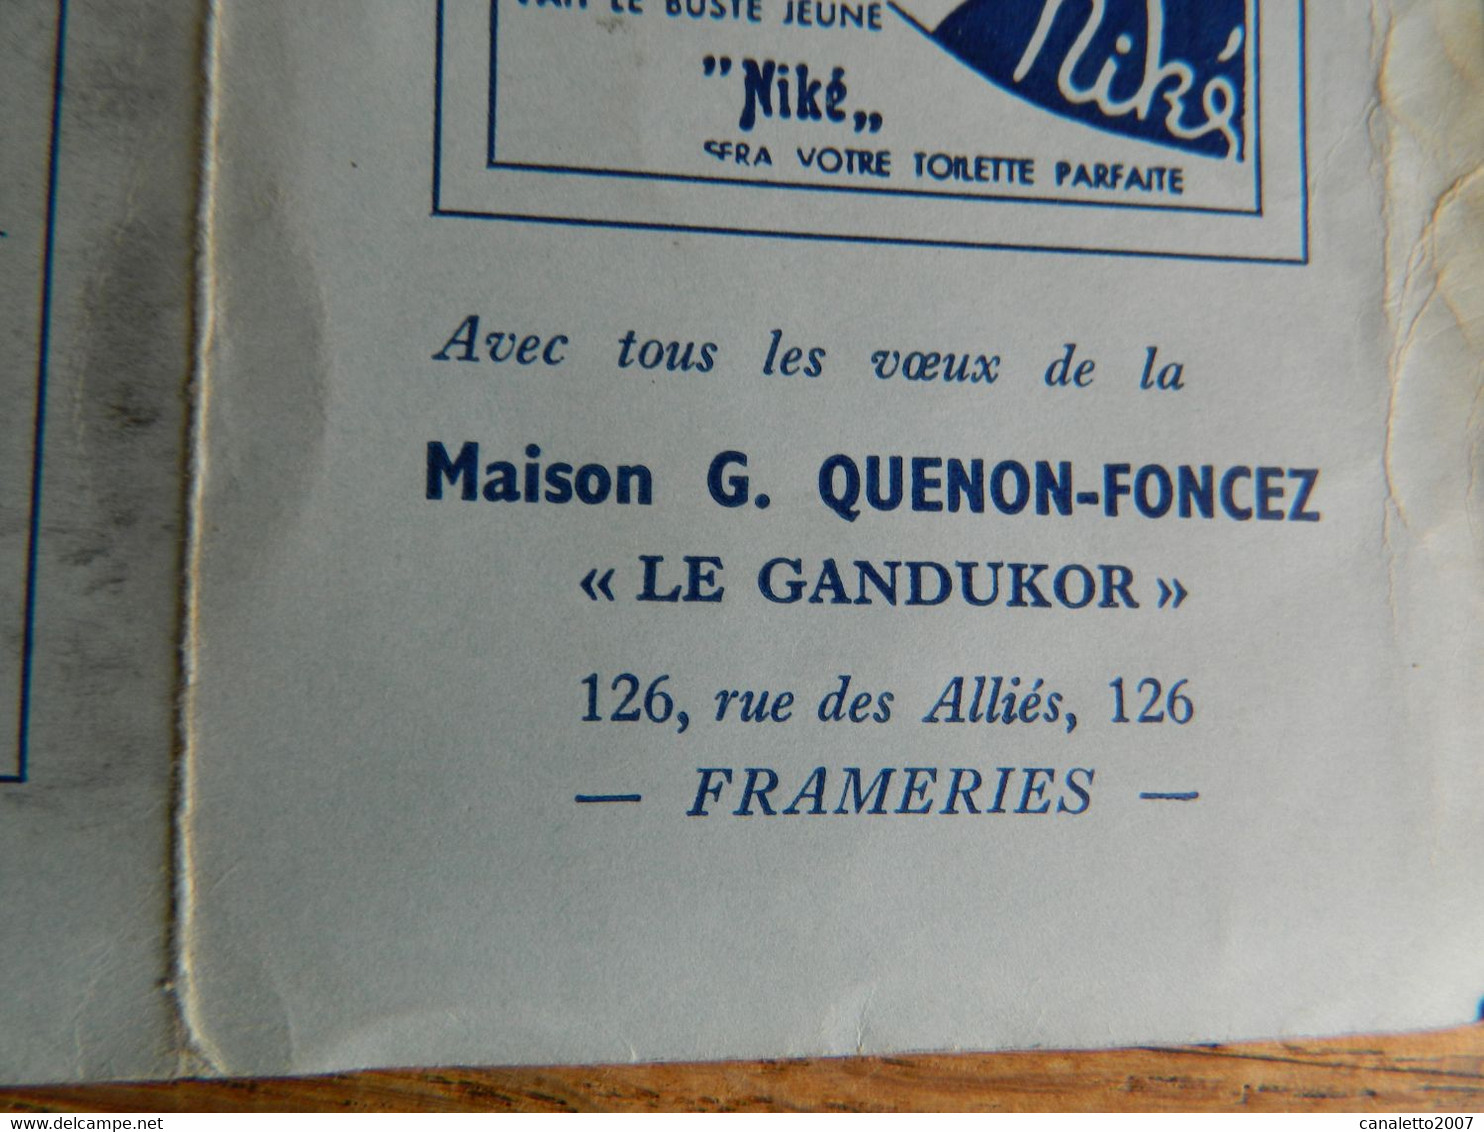 FRAMERIES:CALENDRIER DE 1950 DE LA MAISON G.QUENON-FONCEZ "LE GANDUKOR" 126 RUE DES ALLIES FRAMERIES - Klein Formaat: 1941-60